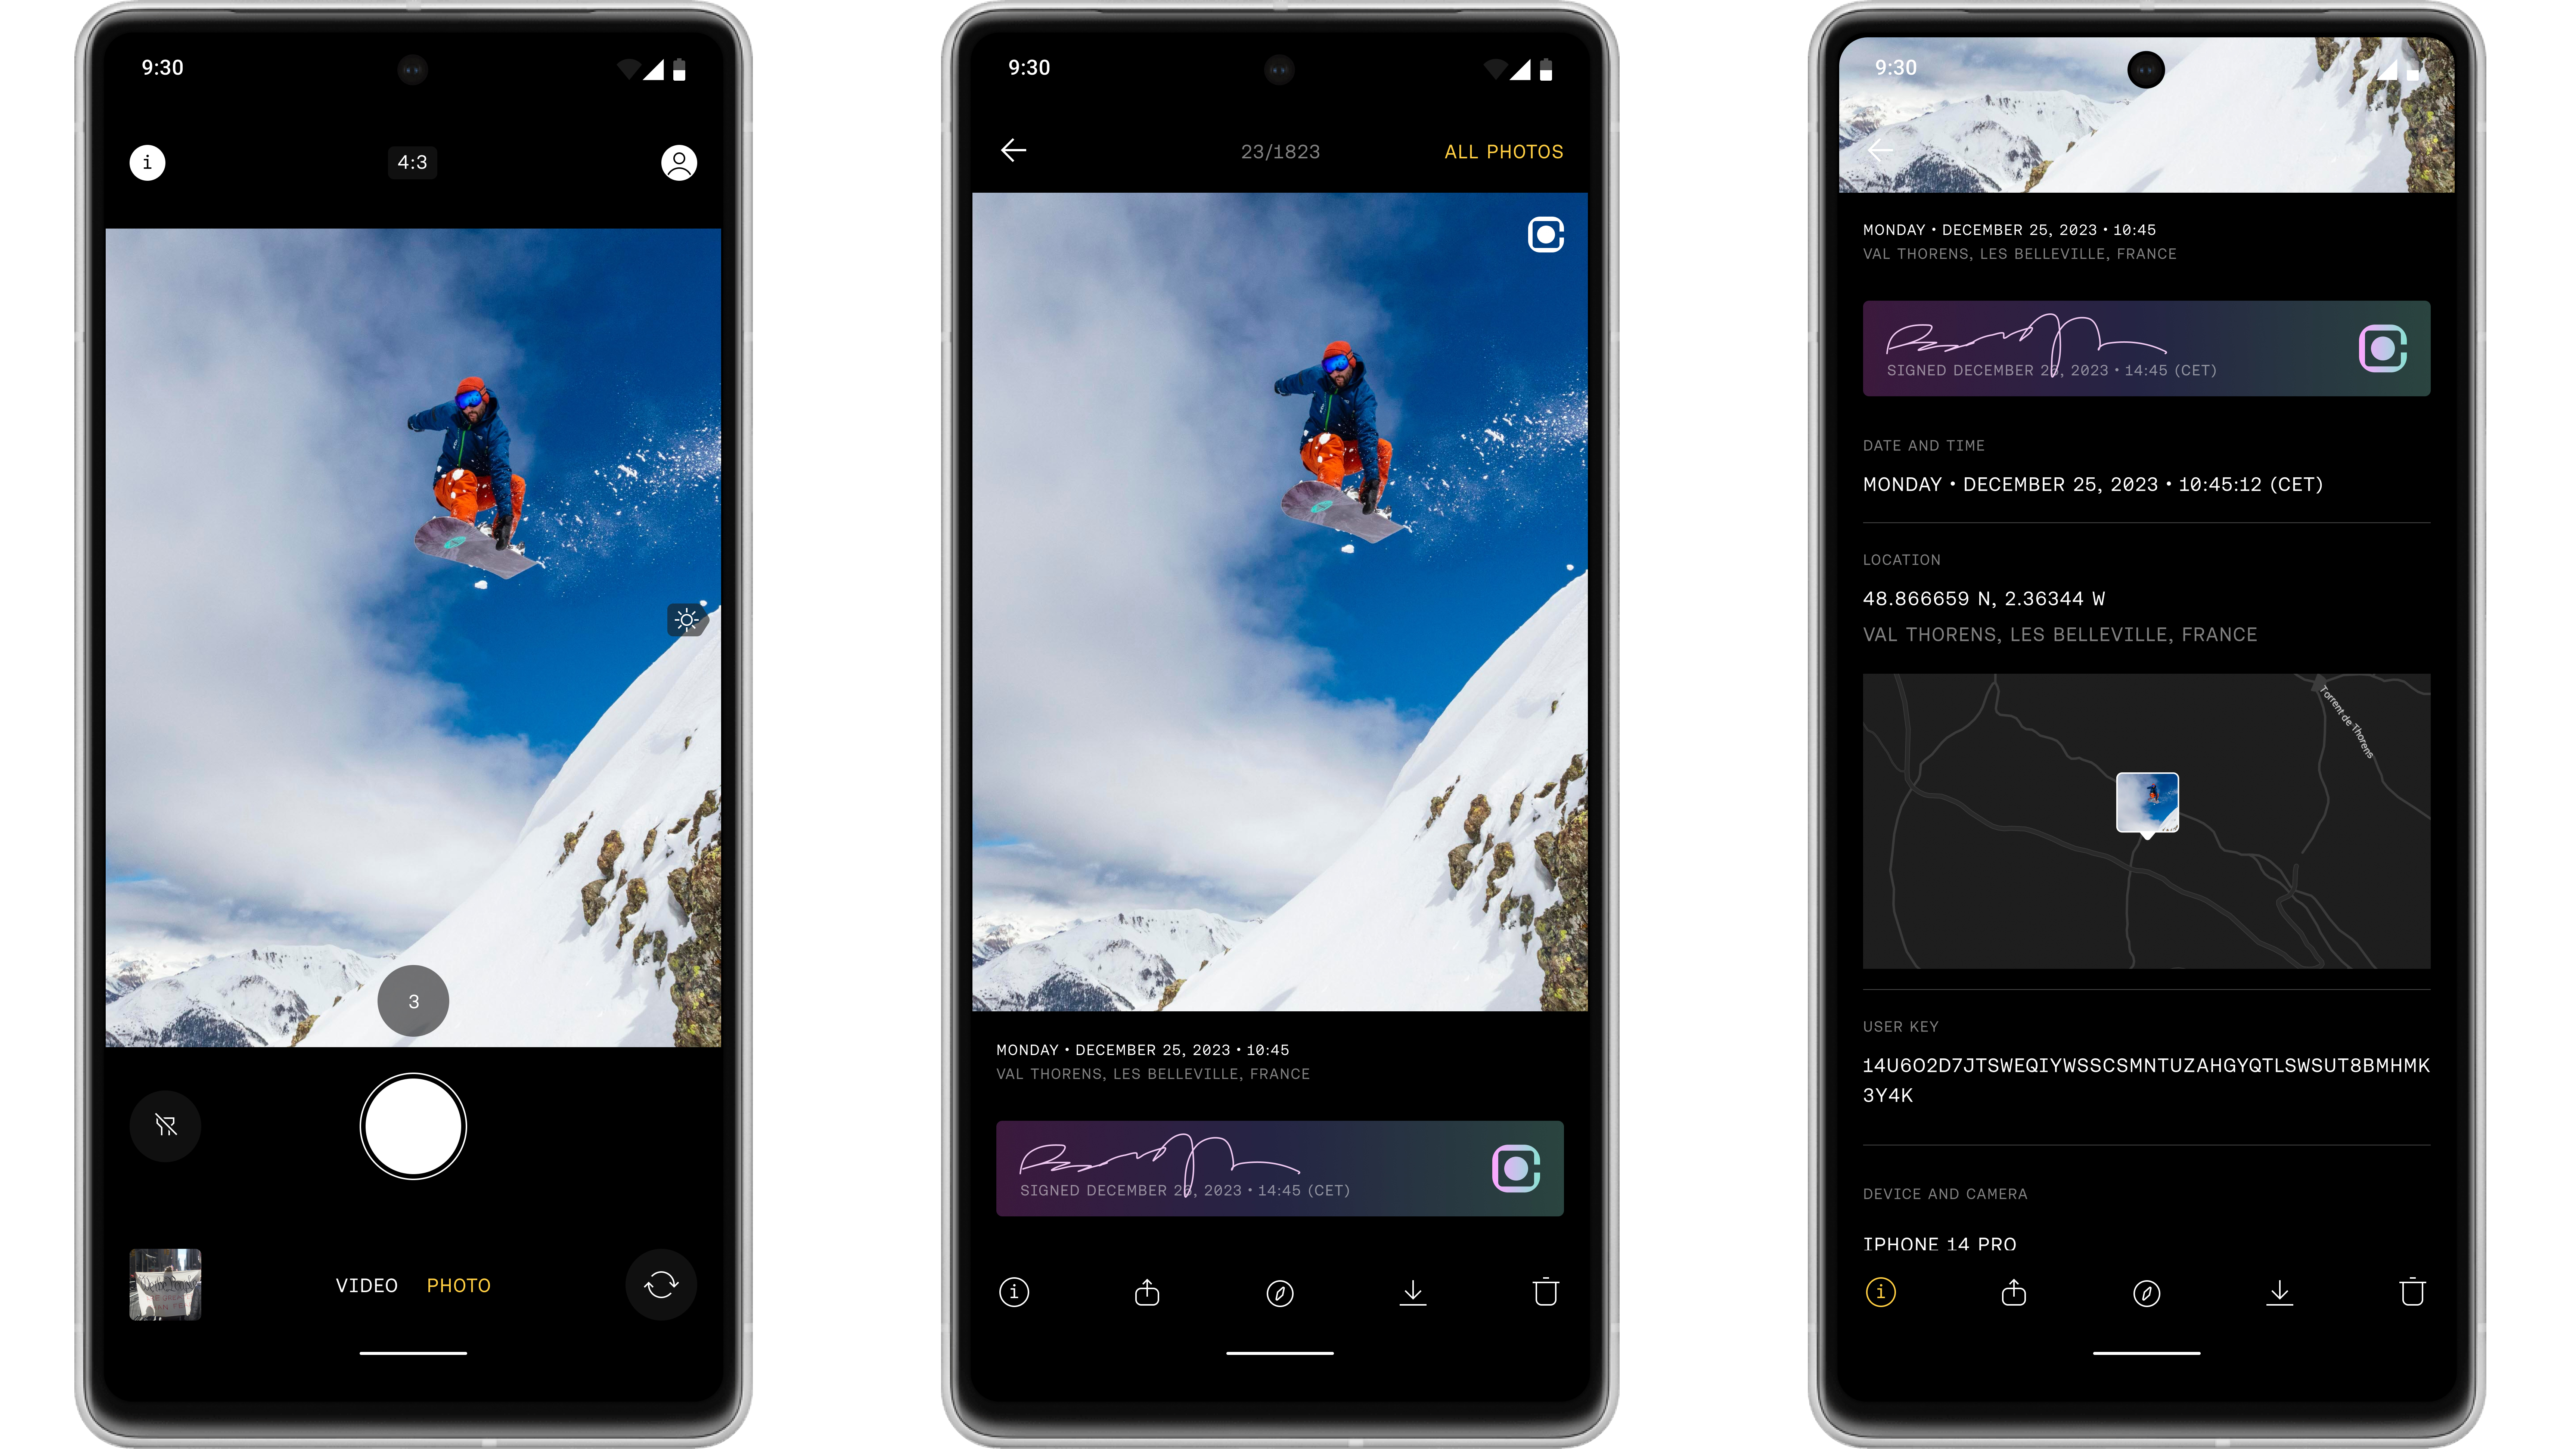 Nodle Click app smartphone UI with camera app and ContentSign screenshots